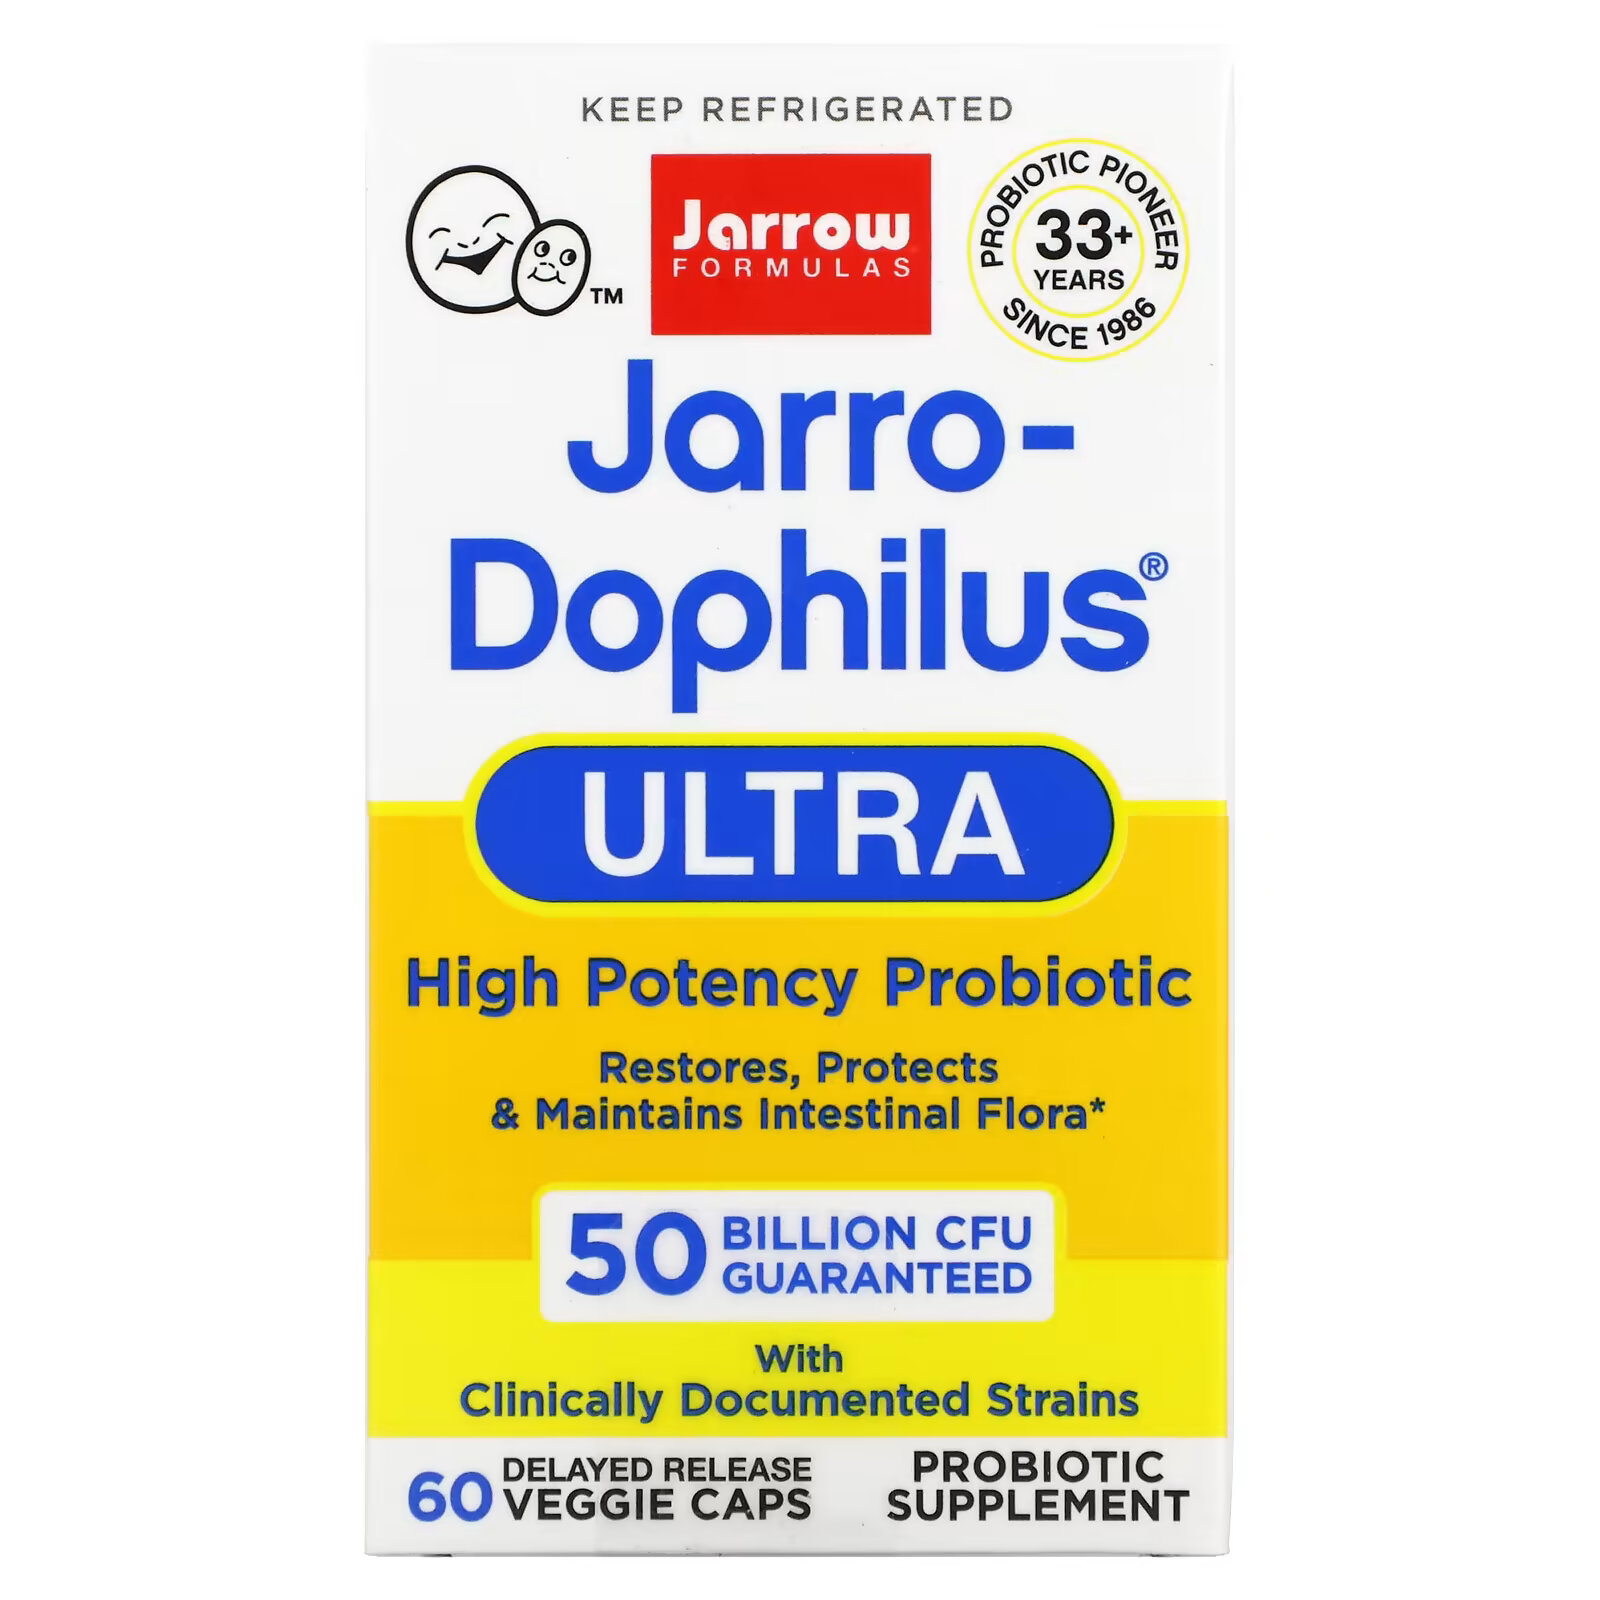 пробиотики для детей со вкусом малины jarrow formulas jarro dophilus kids 1 billion cfu в жевательных таблетках 60 шт Jarrow Formulas, Jarro-Dophilus Ultra, 50 миллиардов, 60 вегетарианских капсул